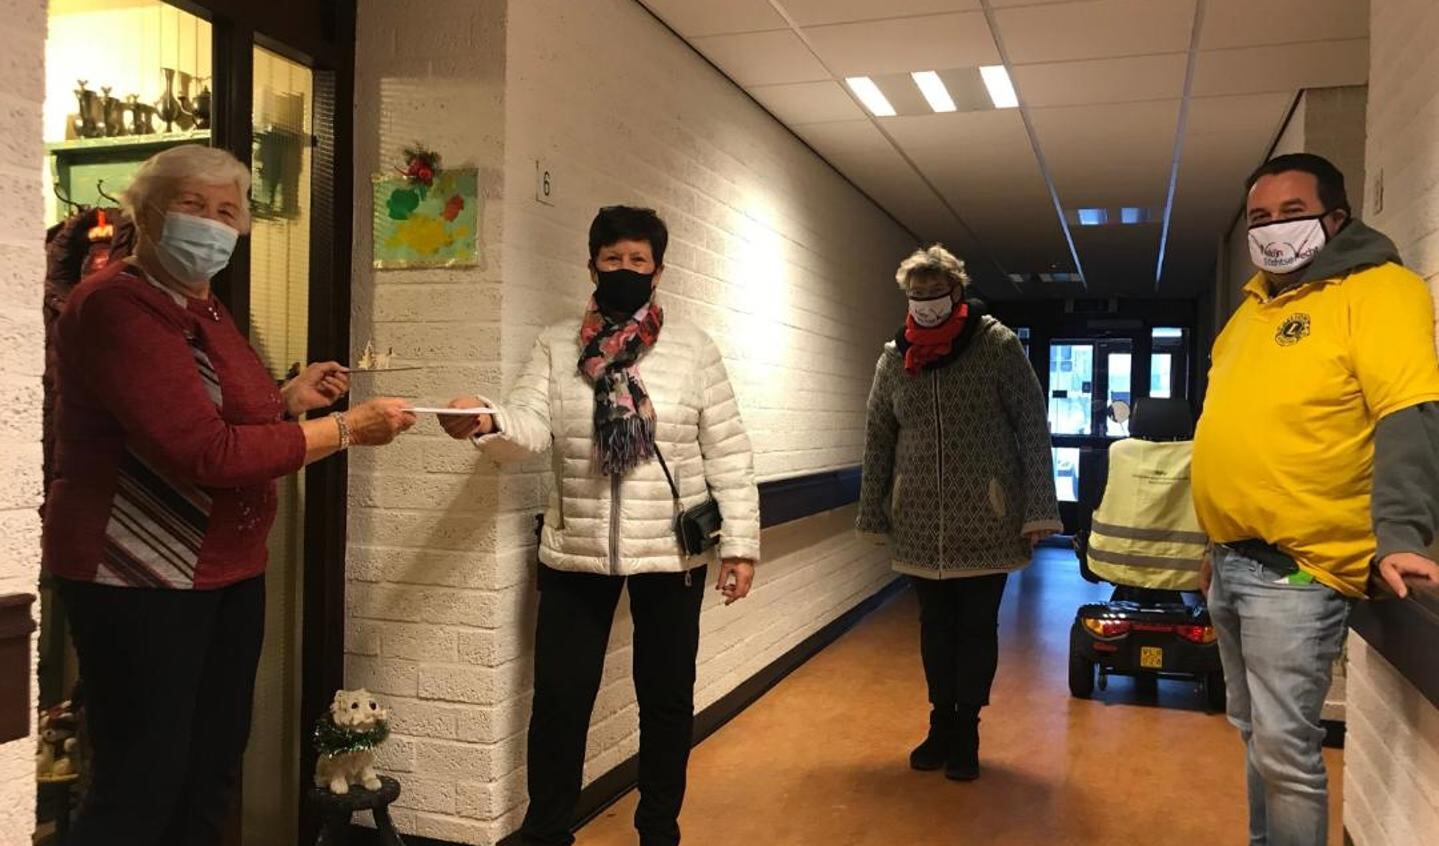 Uitreiking van de eerste kerstgroet aan mevrouw Riet van der Wiel door medewerkers van Welzijn Stichtse Vecht en Lions Club Over Holland